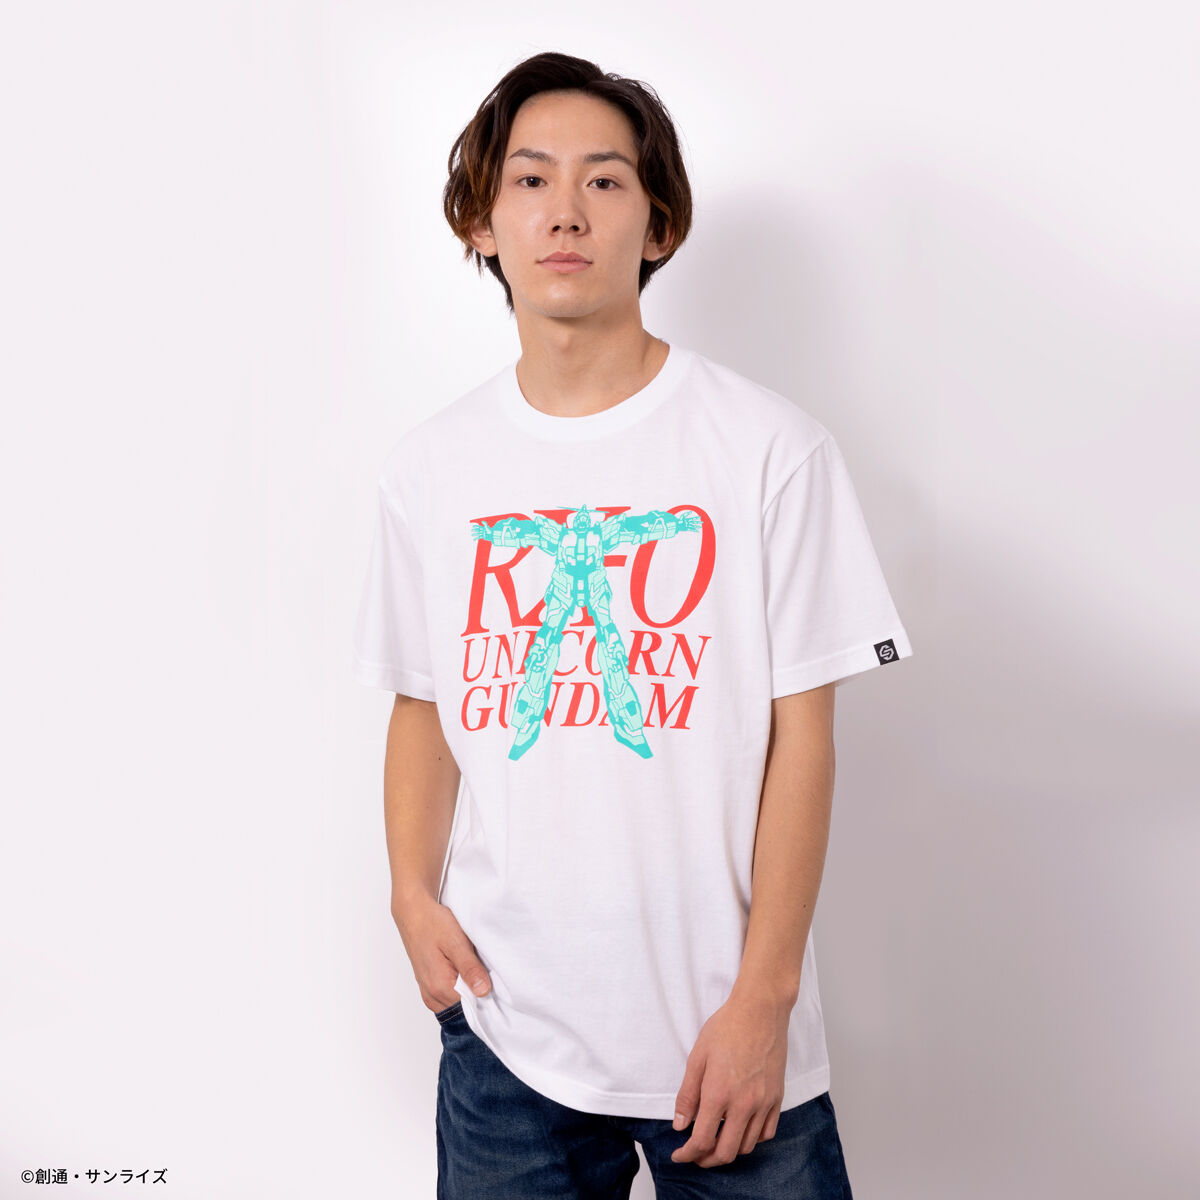 RX-0 T-Shirt—Mobile Suit Gundam Unicorn/STRICT-G Collaboration